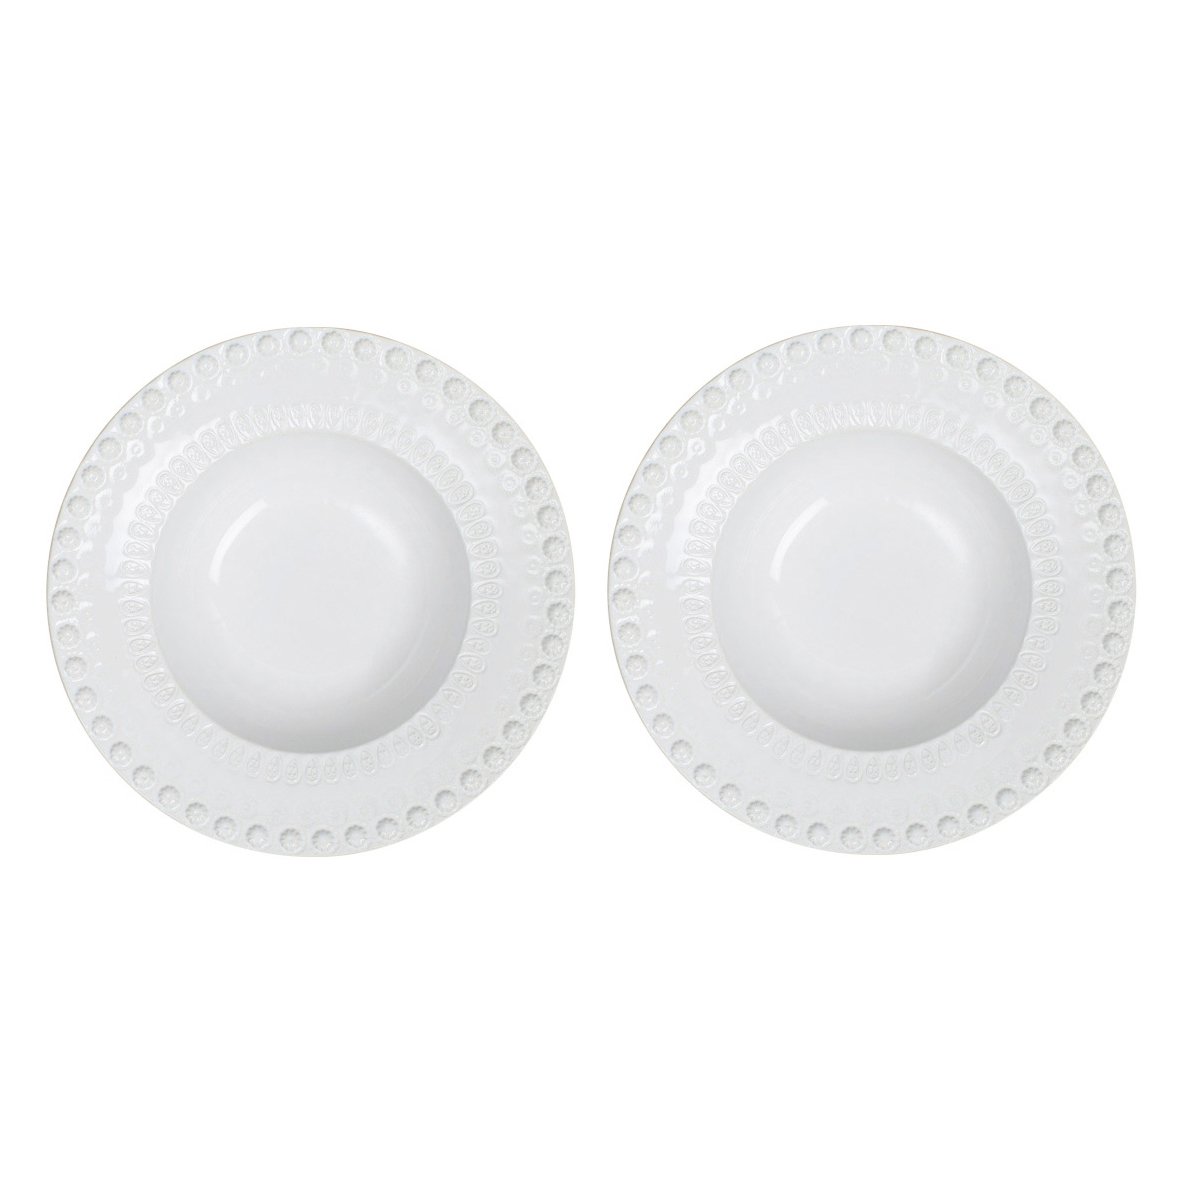 potteryjo assiette creuse daisy ø 21 cm lot de 2 white (blanc)